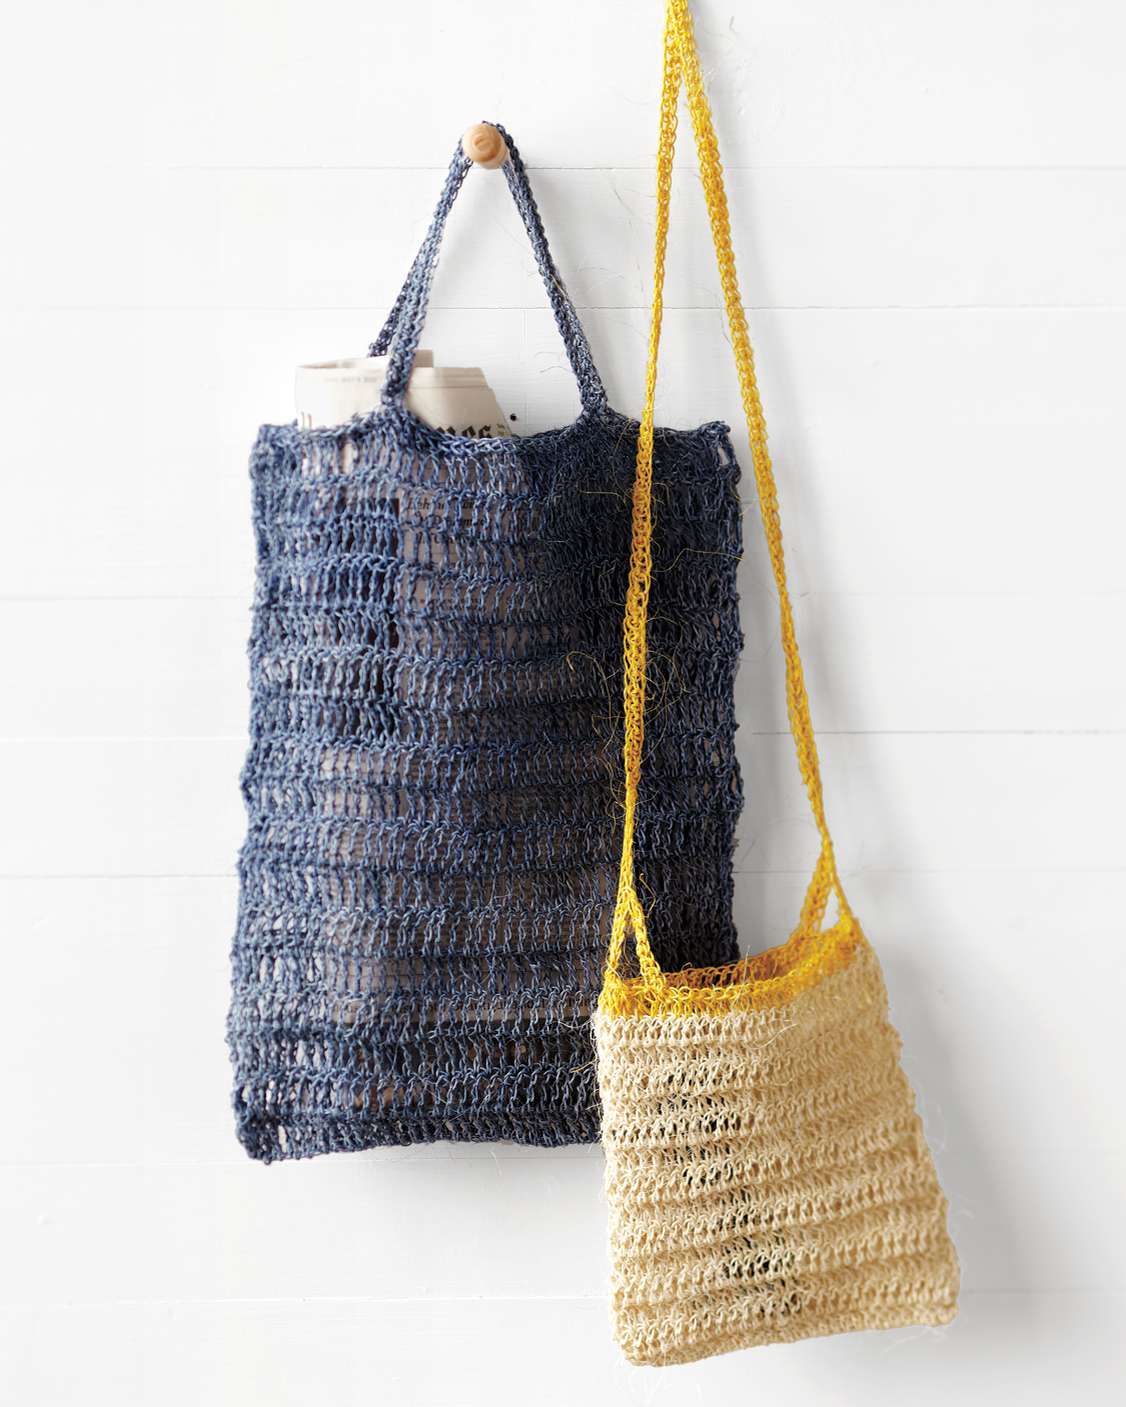 Crocheted Summer Bags